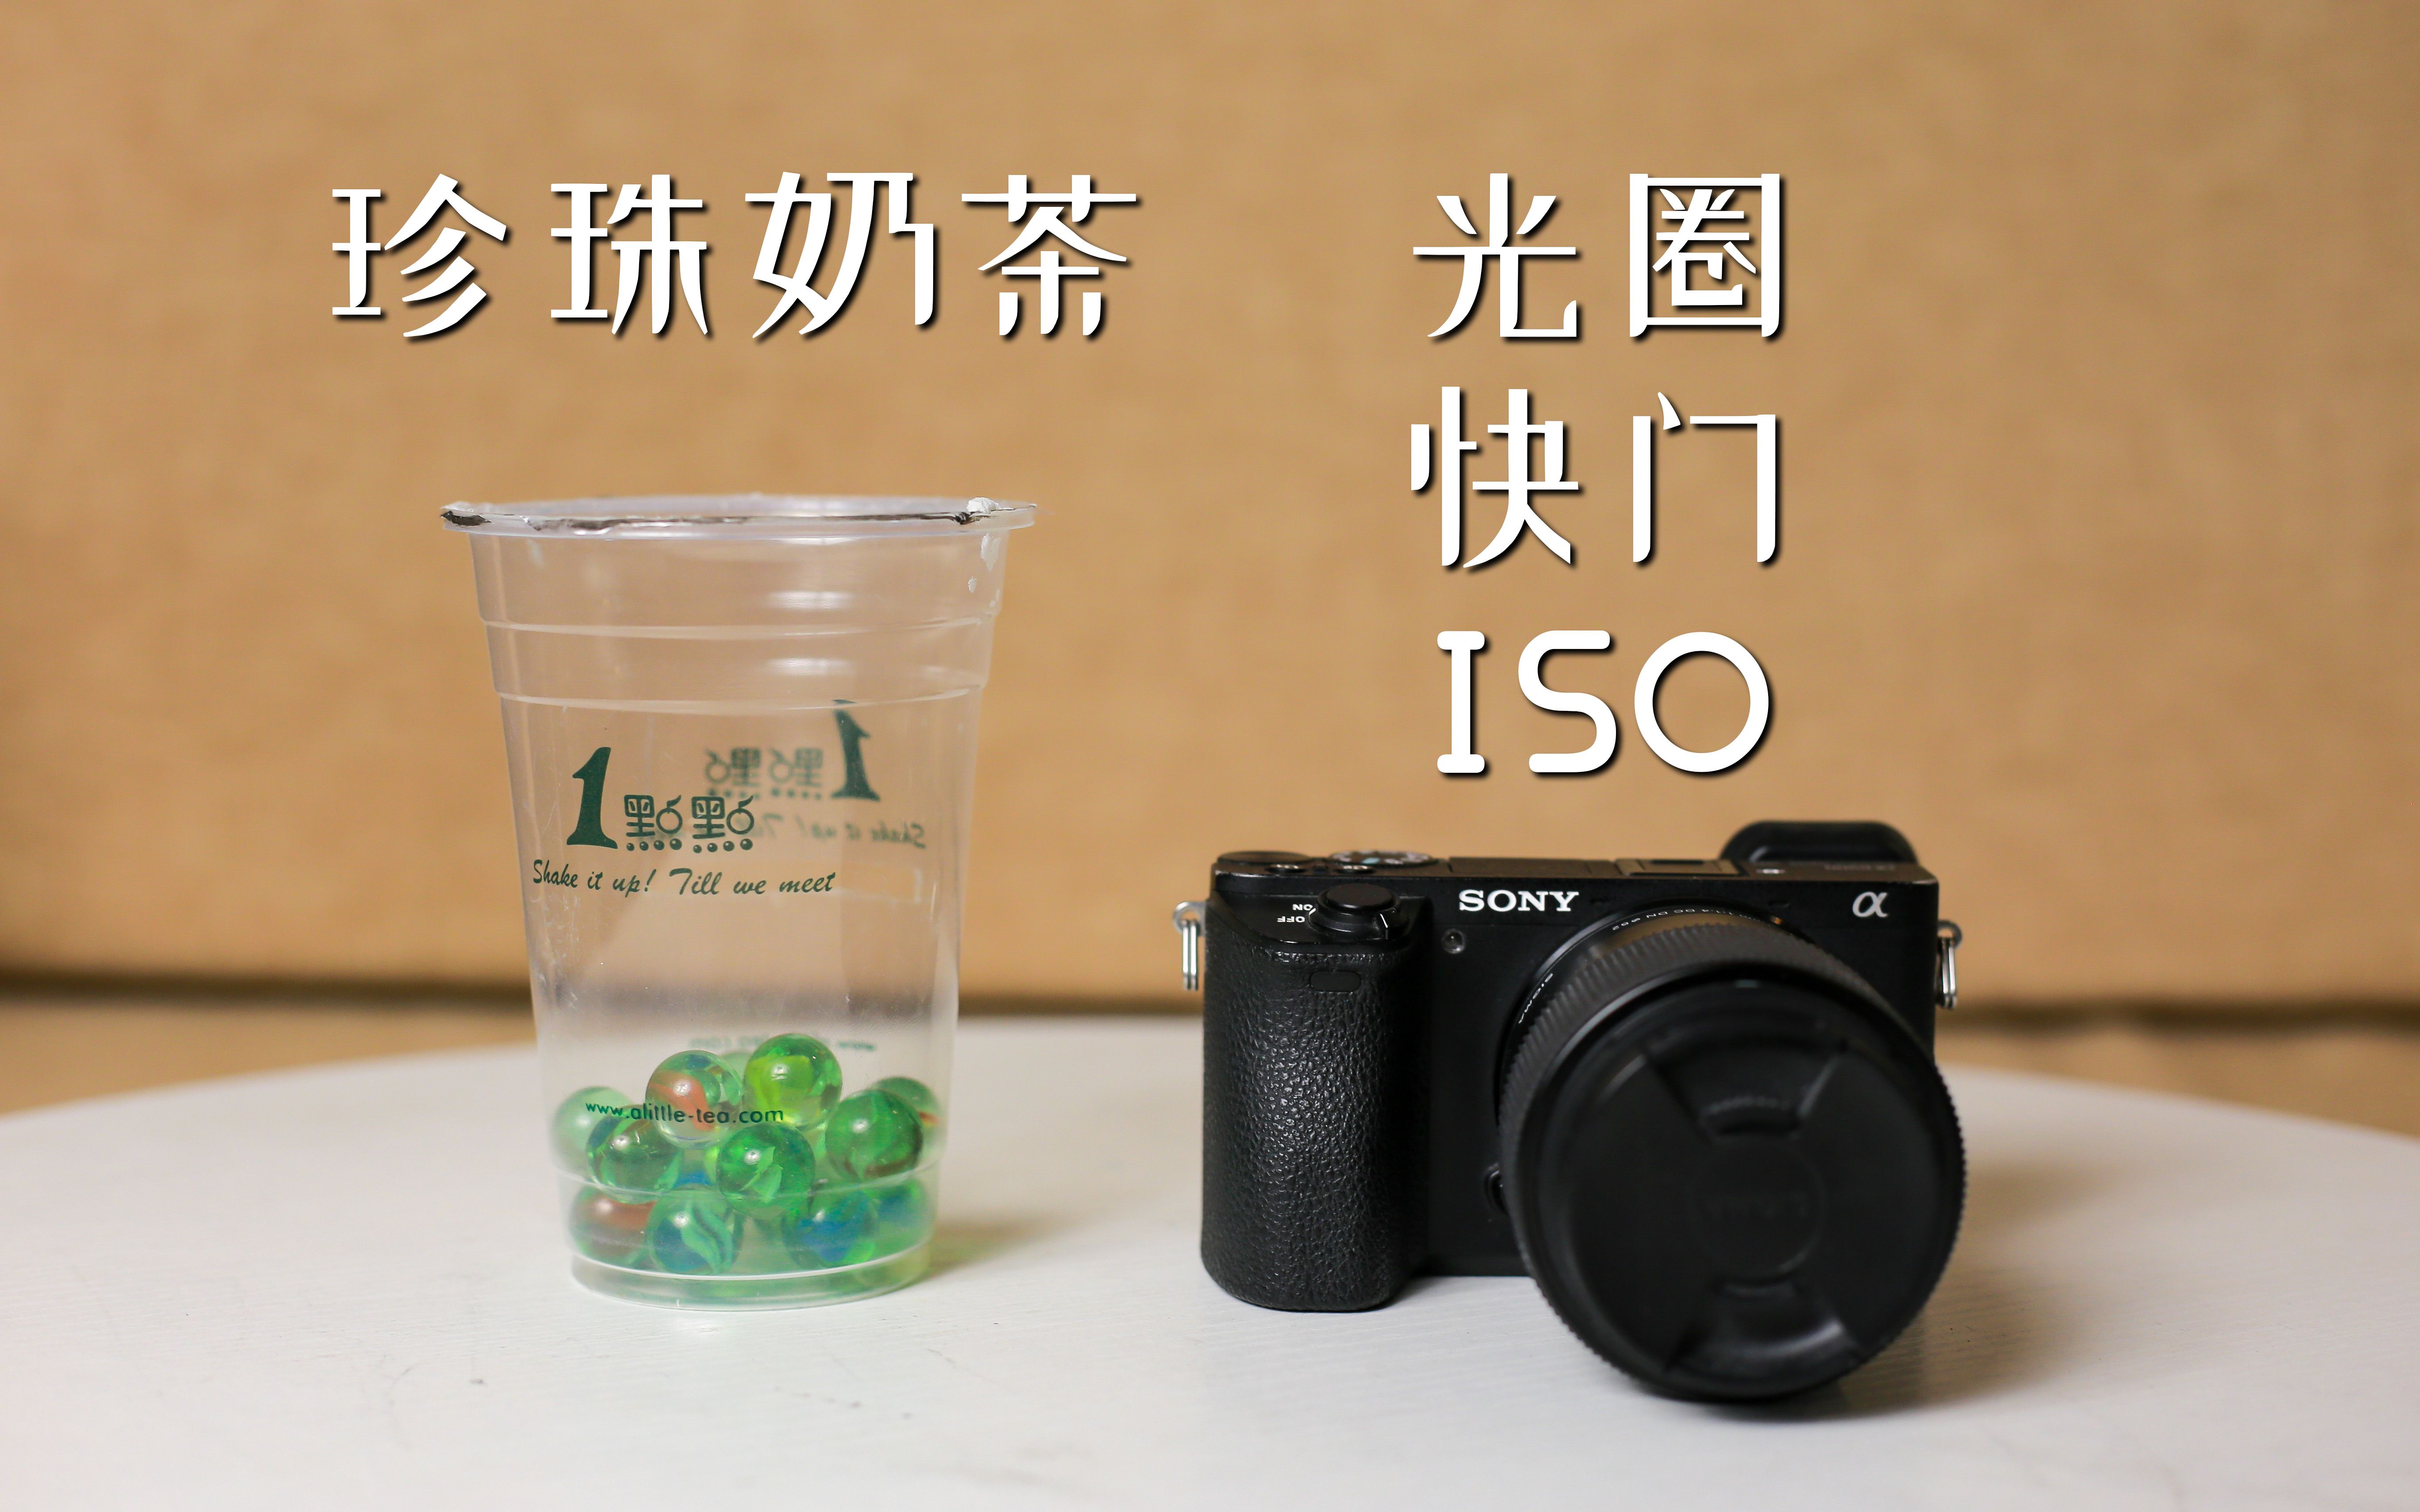 【相机入门01】用珍珠奶茶理解光圈快门ISO，5分钟学会摄影曝光基础